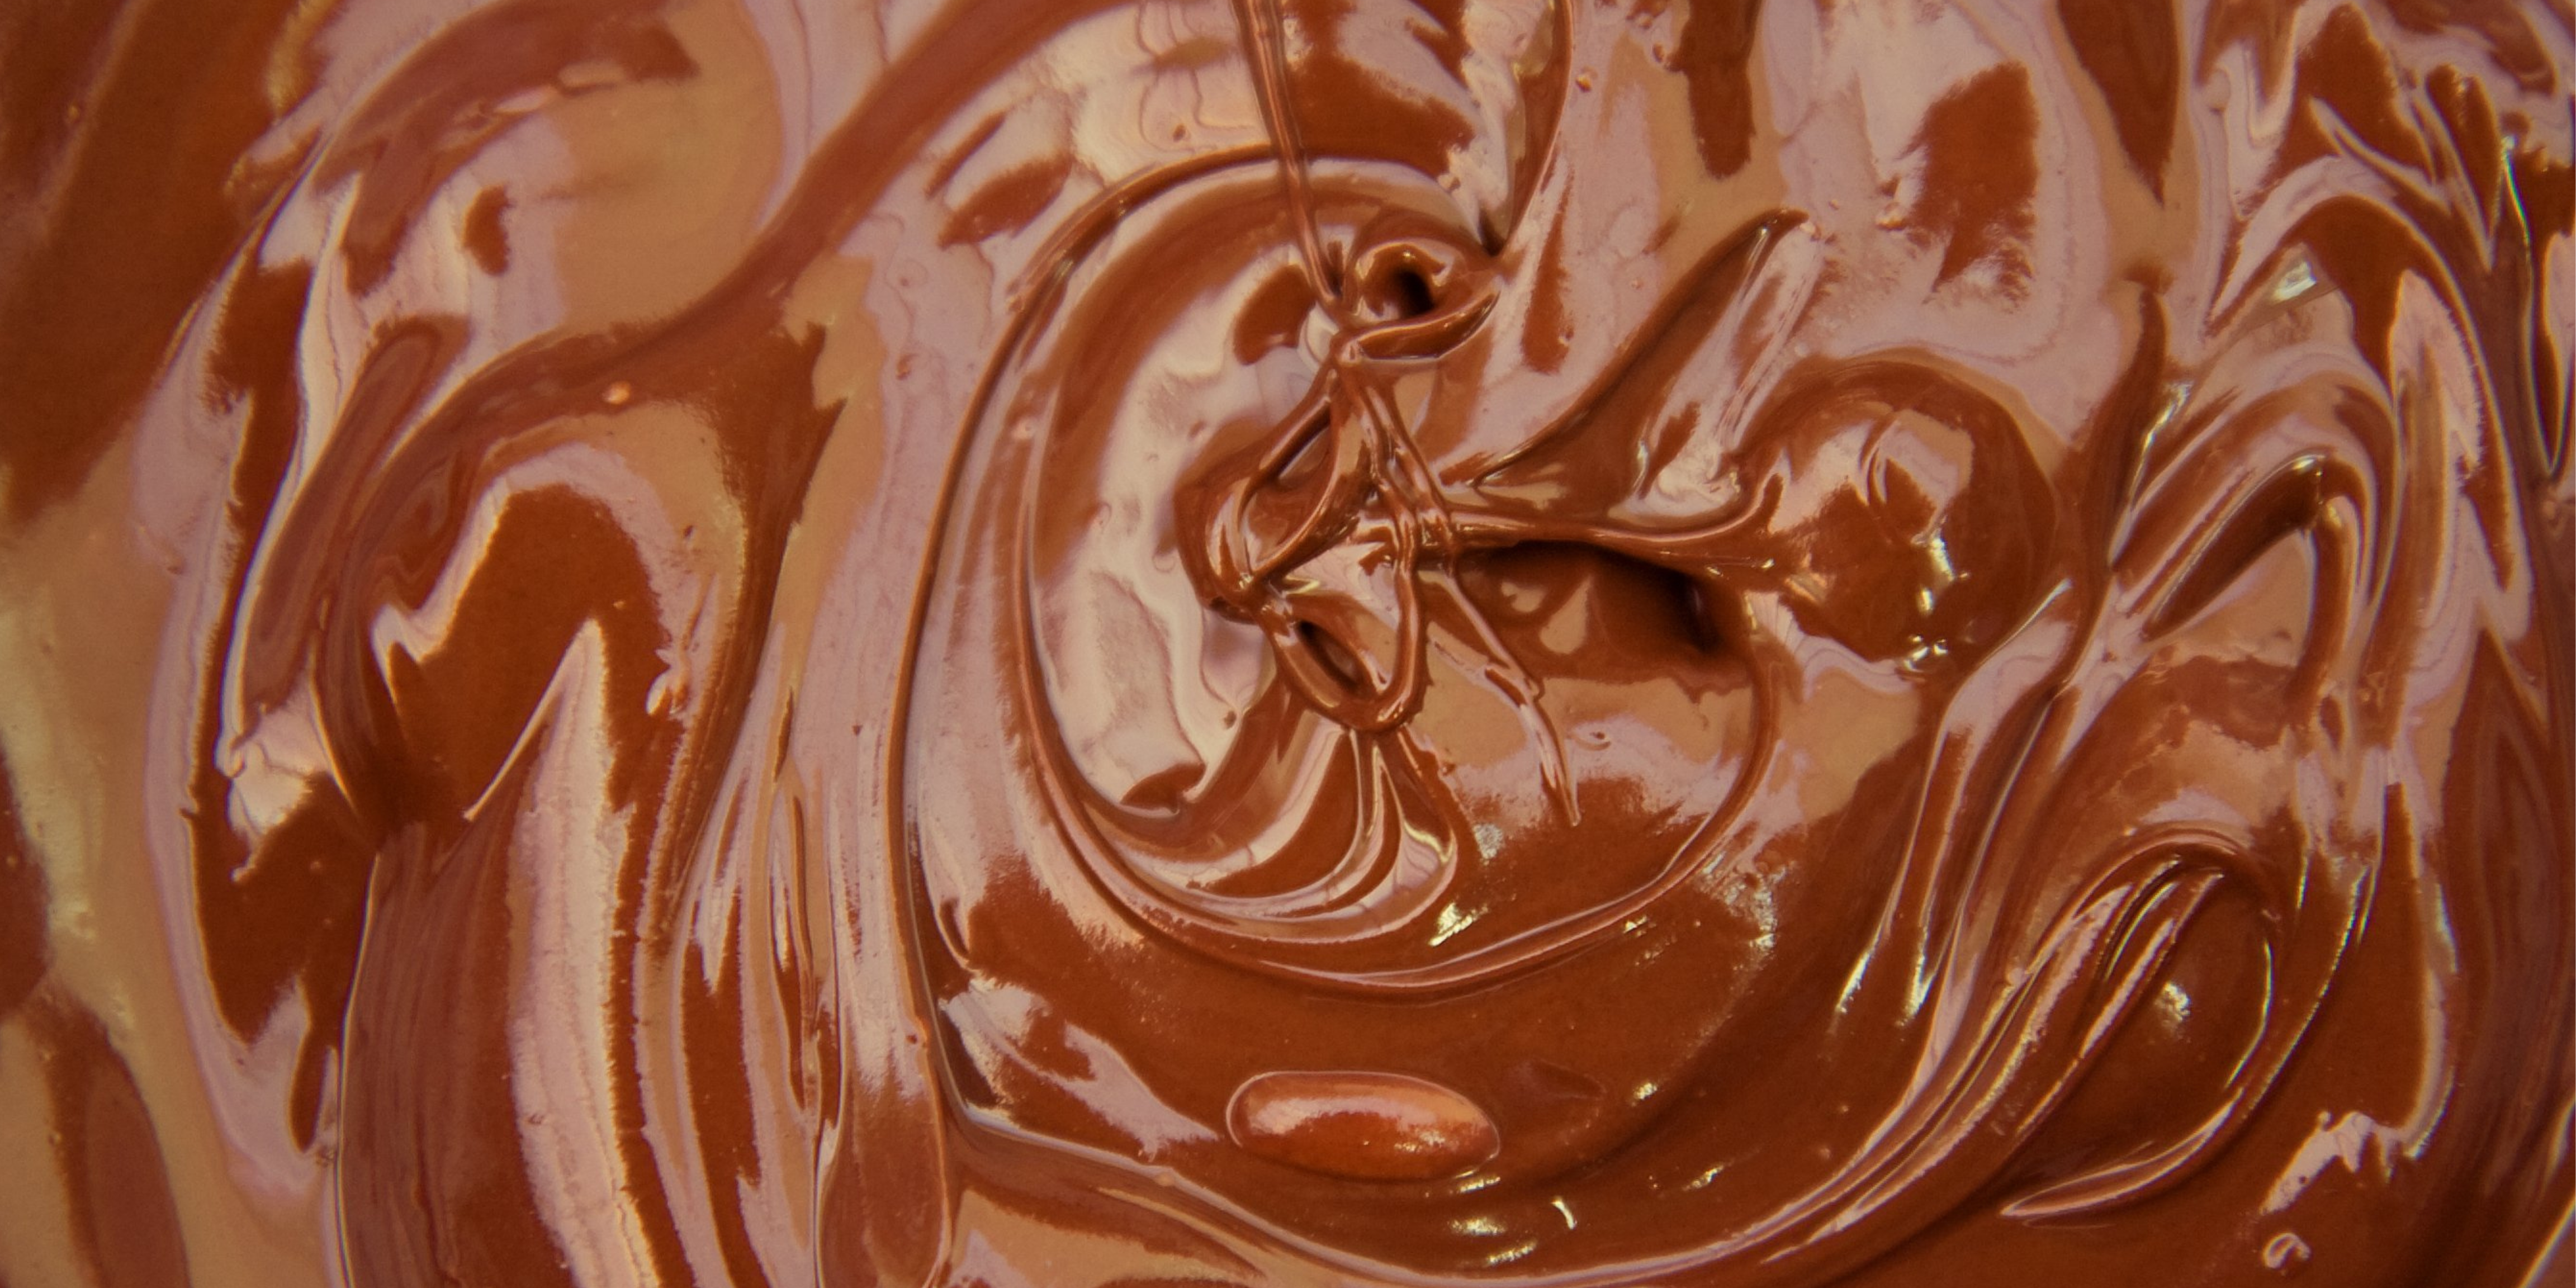 Receta de natillas caseras con chocolate sin gluten para celiacos